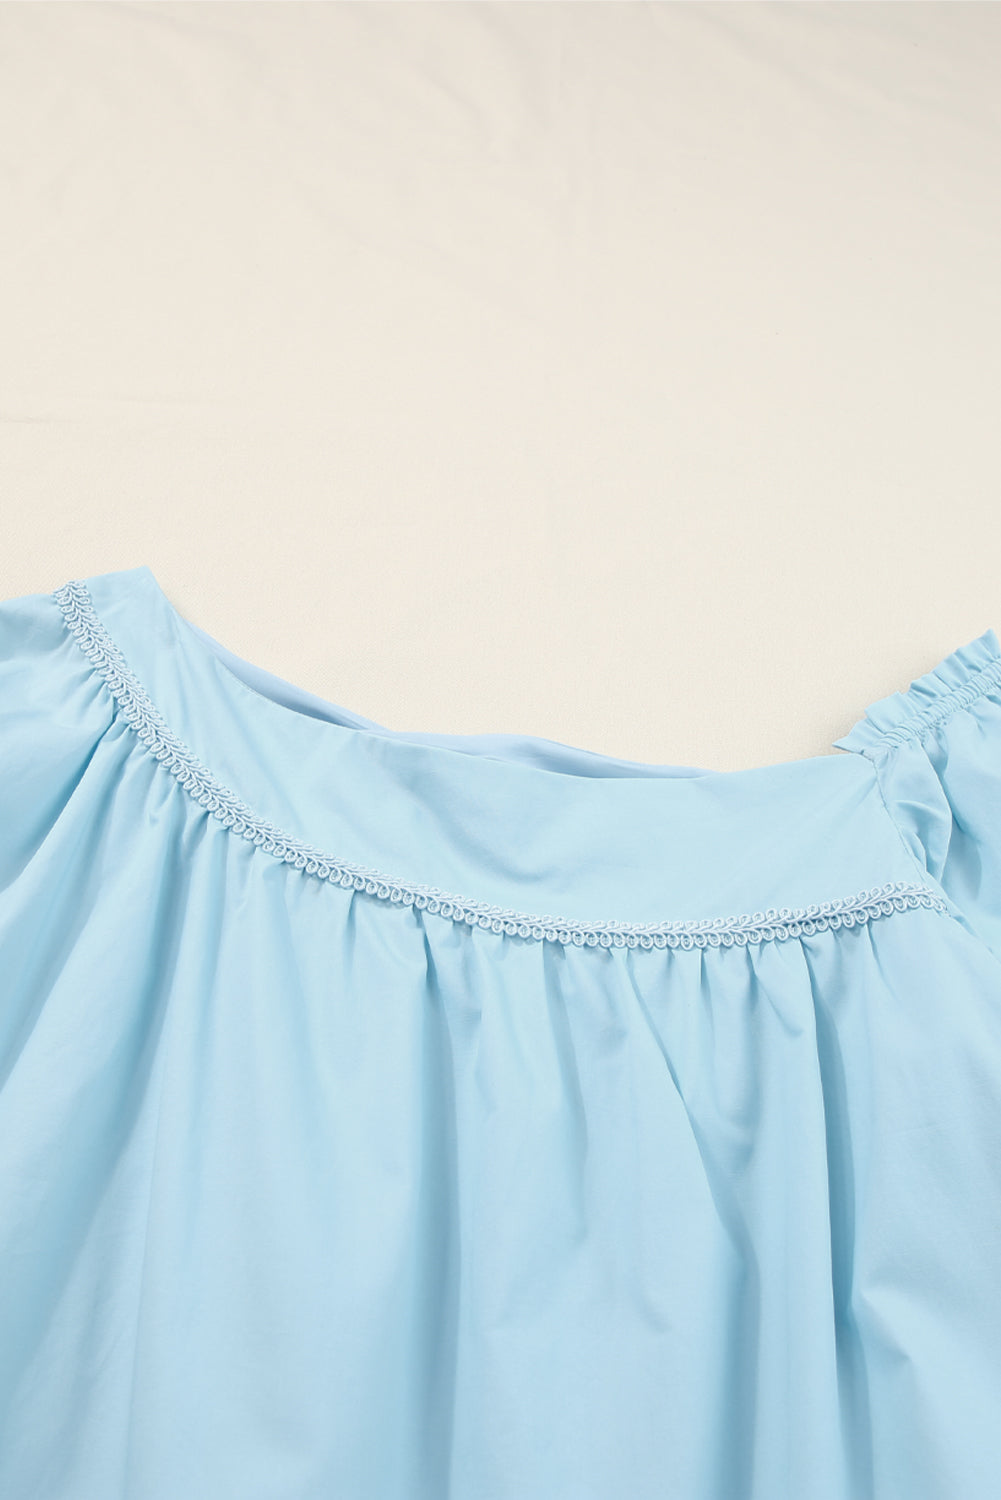 Himmelblaues, asymmetrisches Swing-Minikleid mit exquisitem Besatz und Puffärmeln